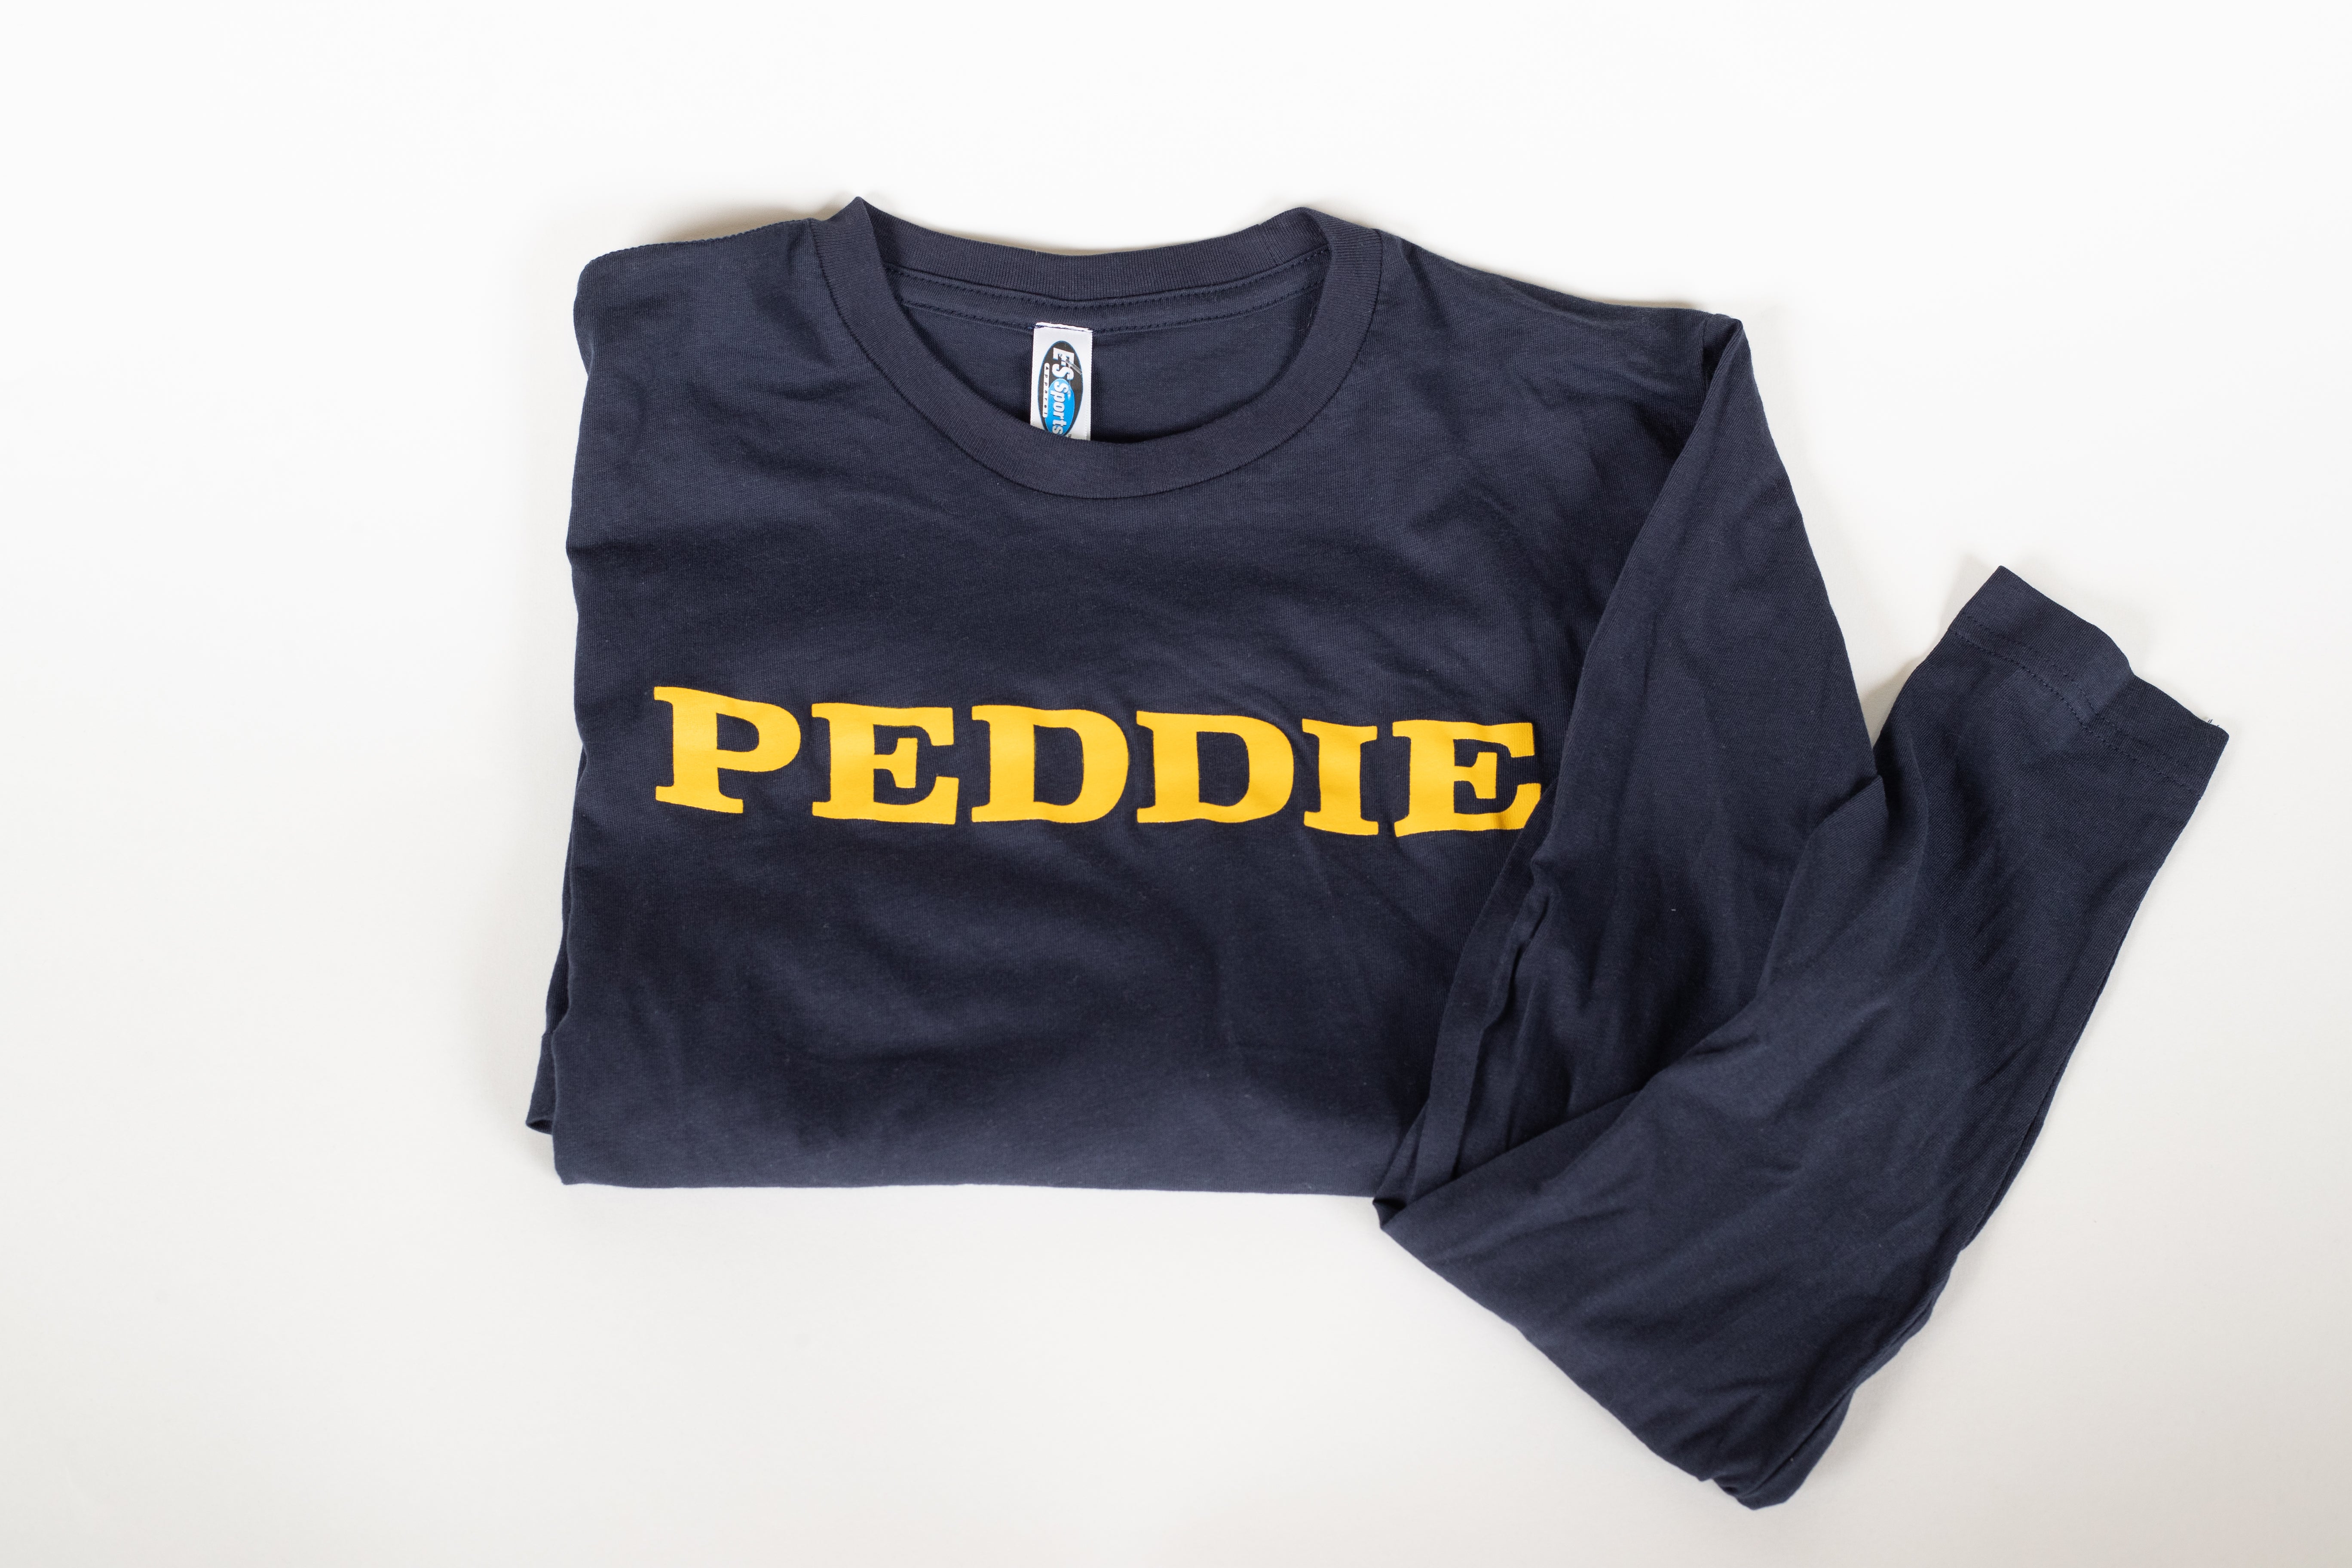 Peddie Long Sleeve Tee Shirt